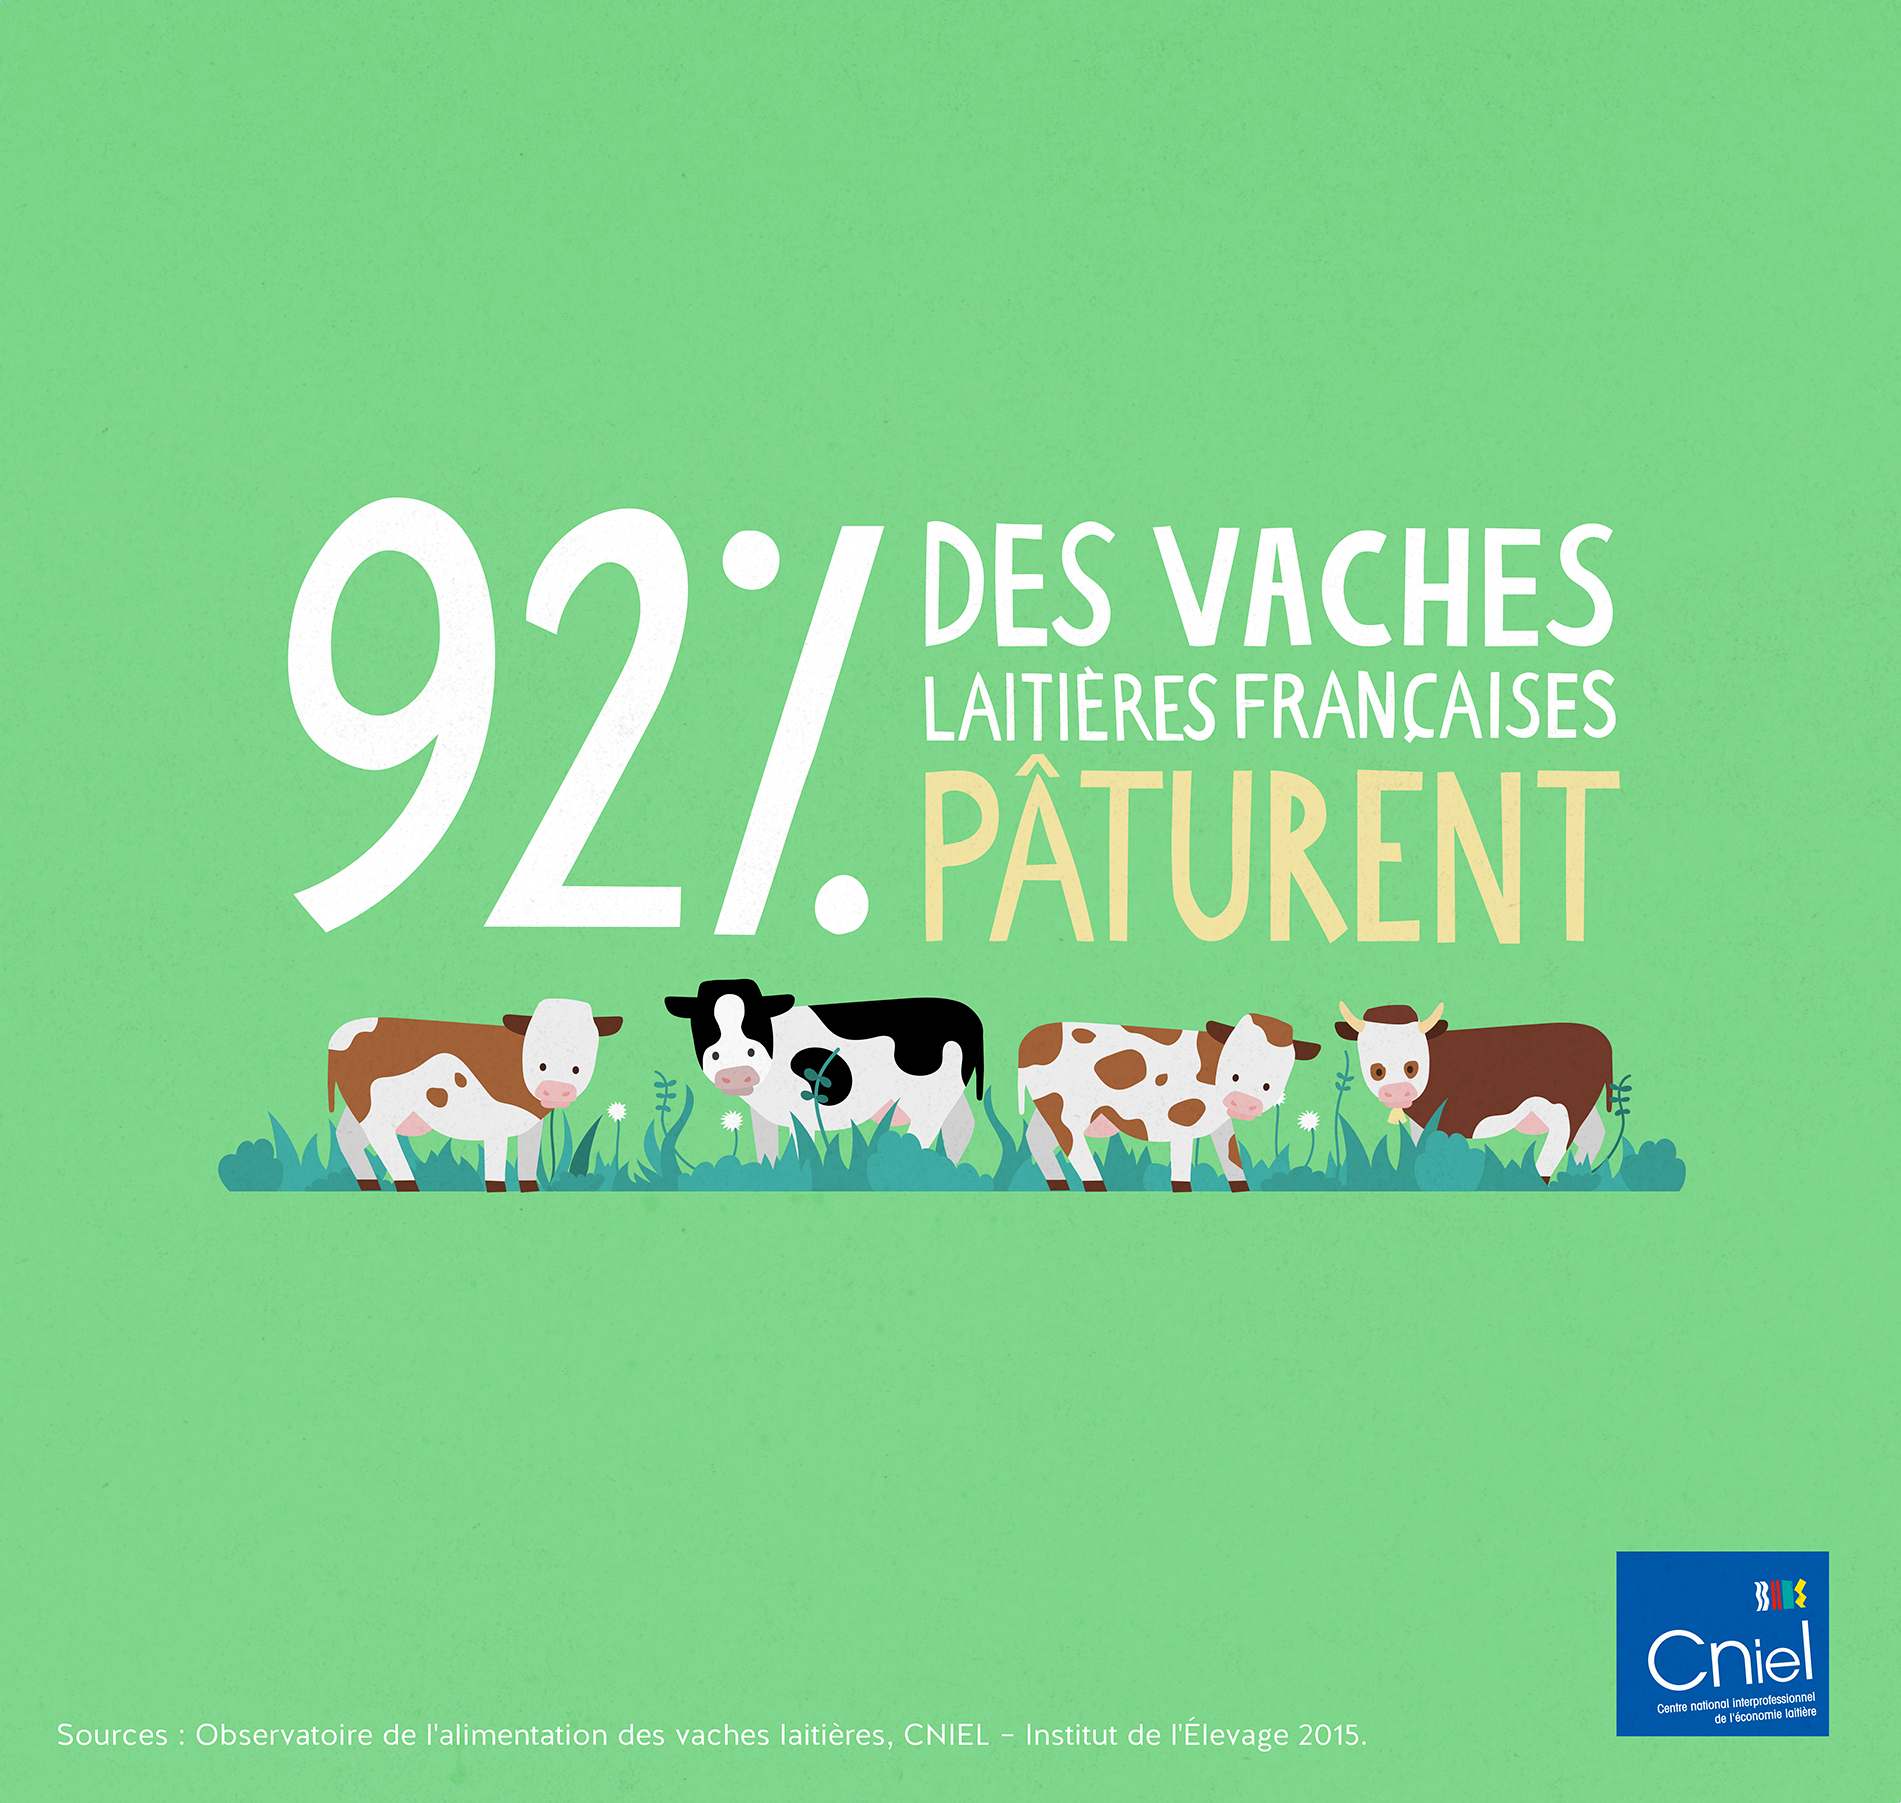 92% des vaches françaises pâturent